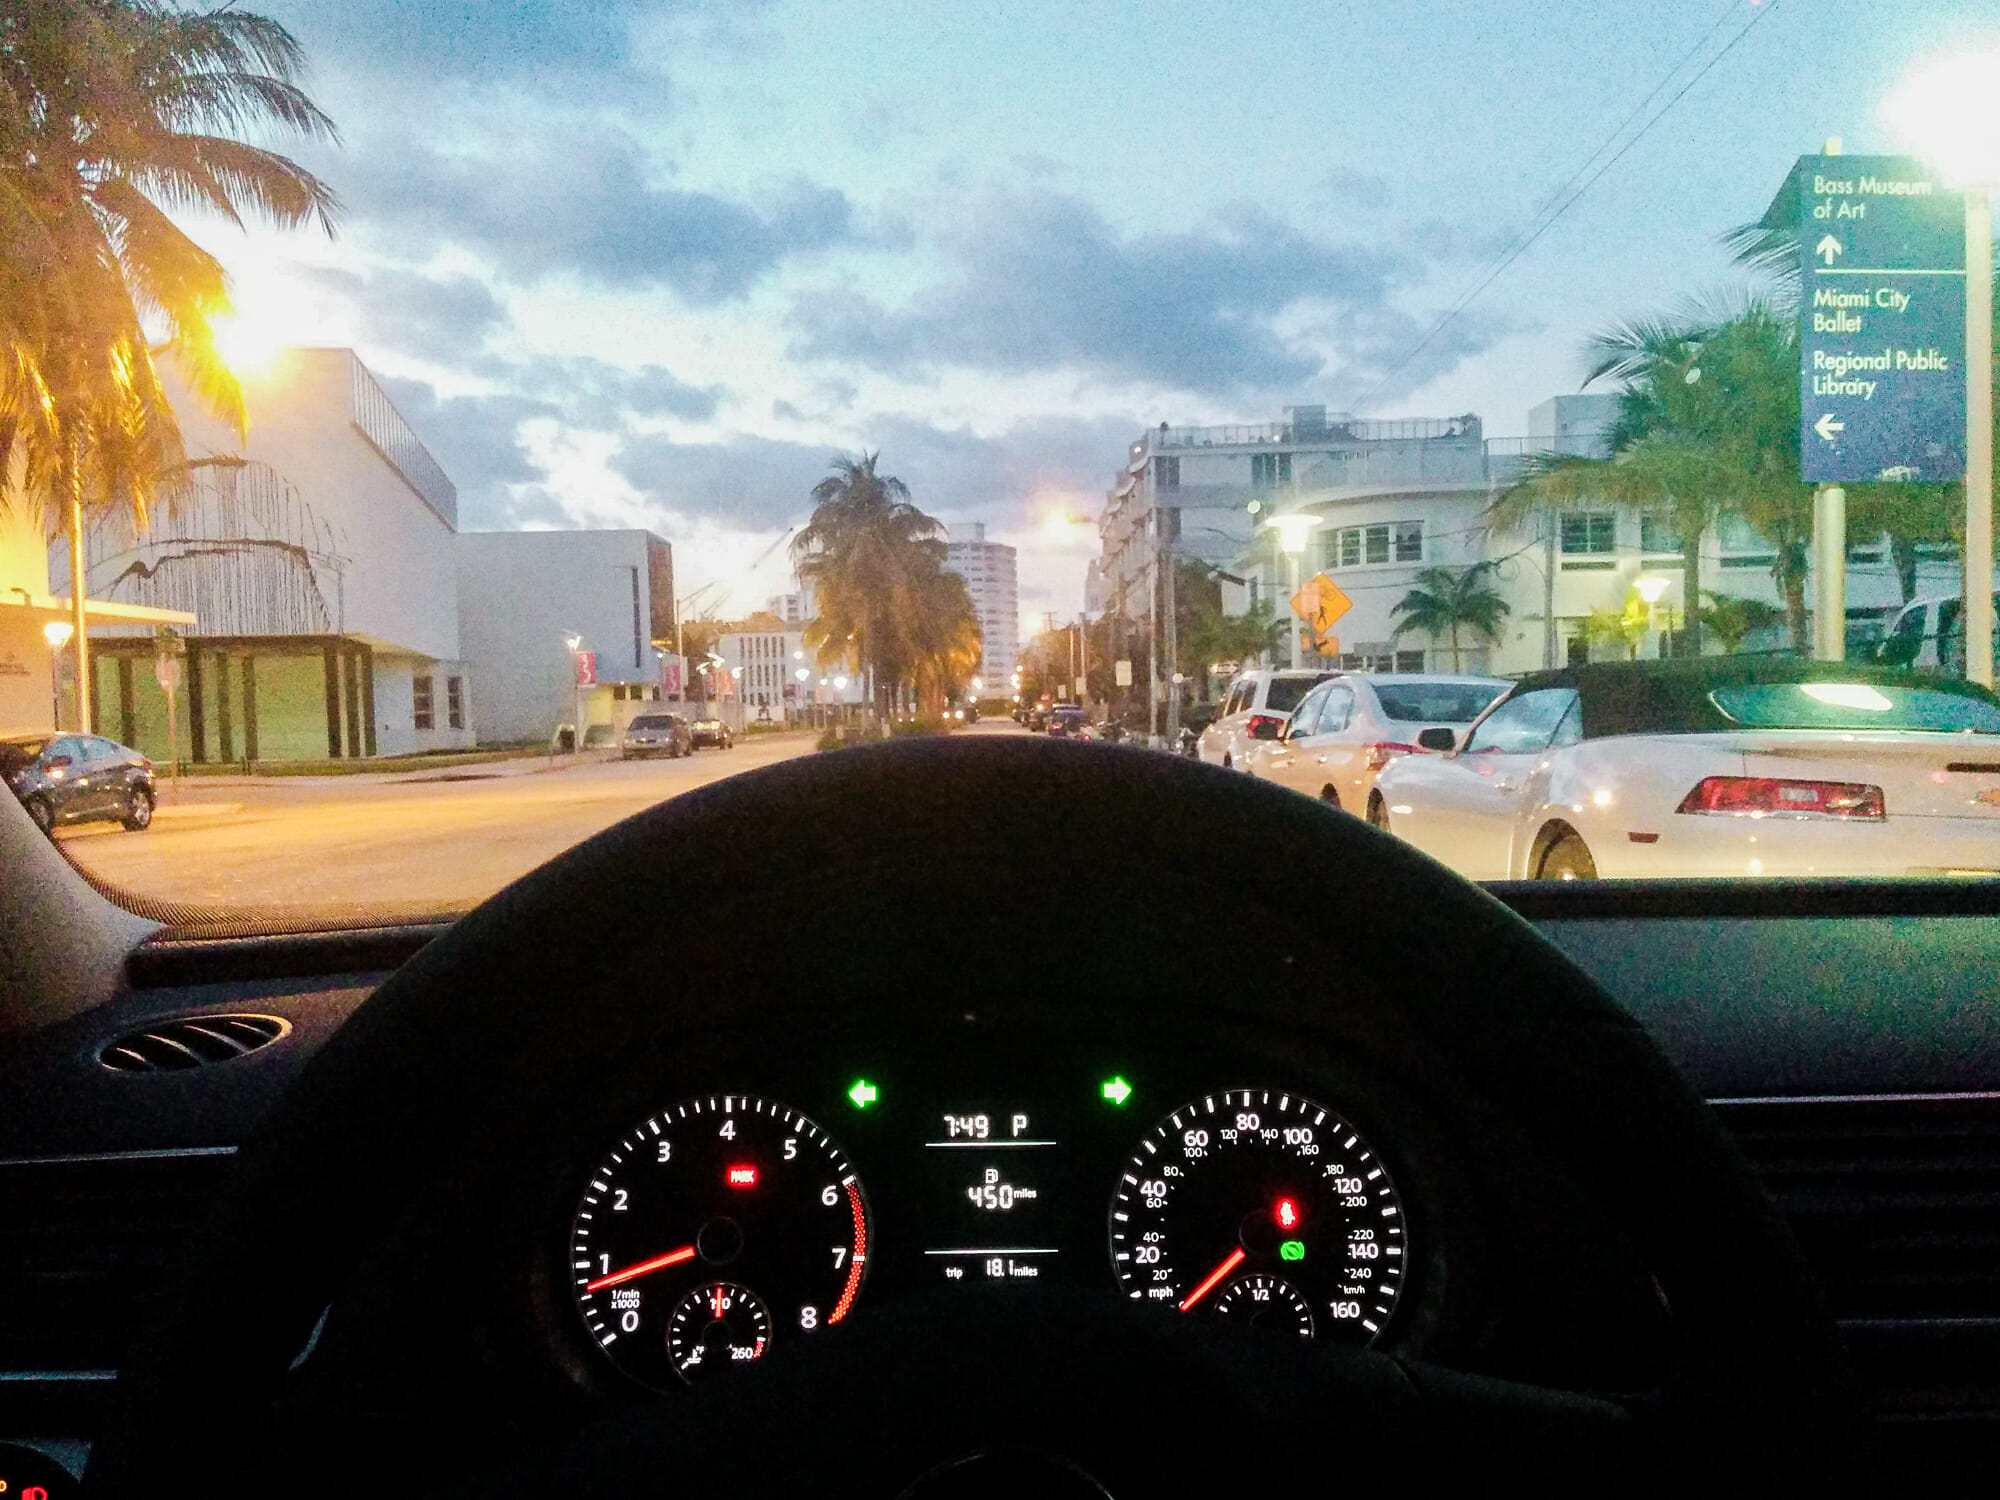 Foto tirada de trás do volante do carro, mostrando uma cidade ao entardecer, com algumas luzes já acesas